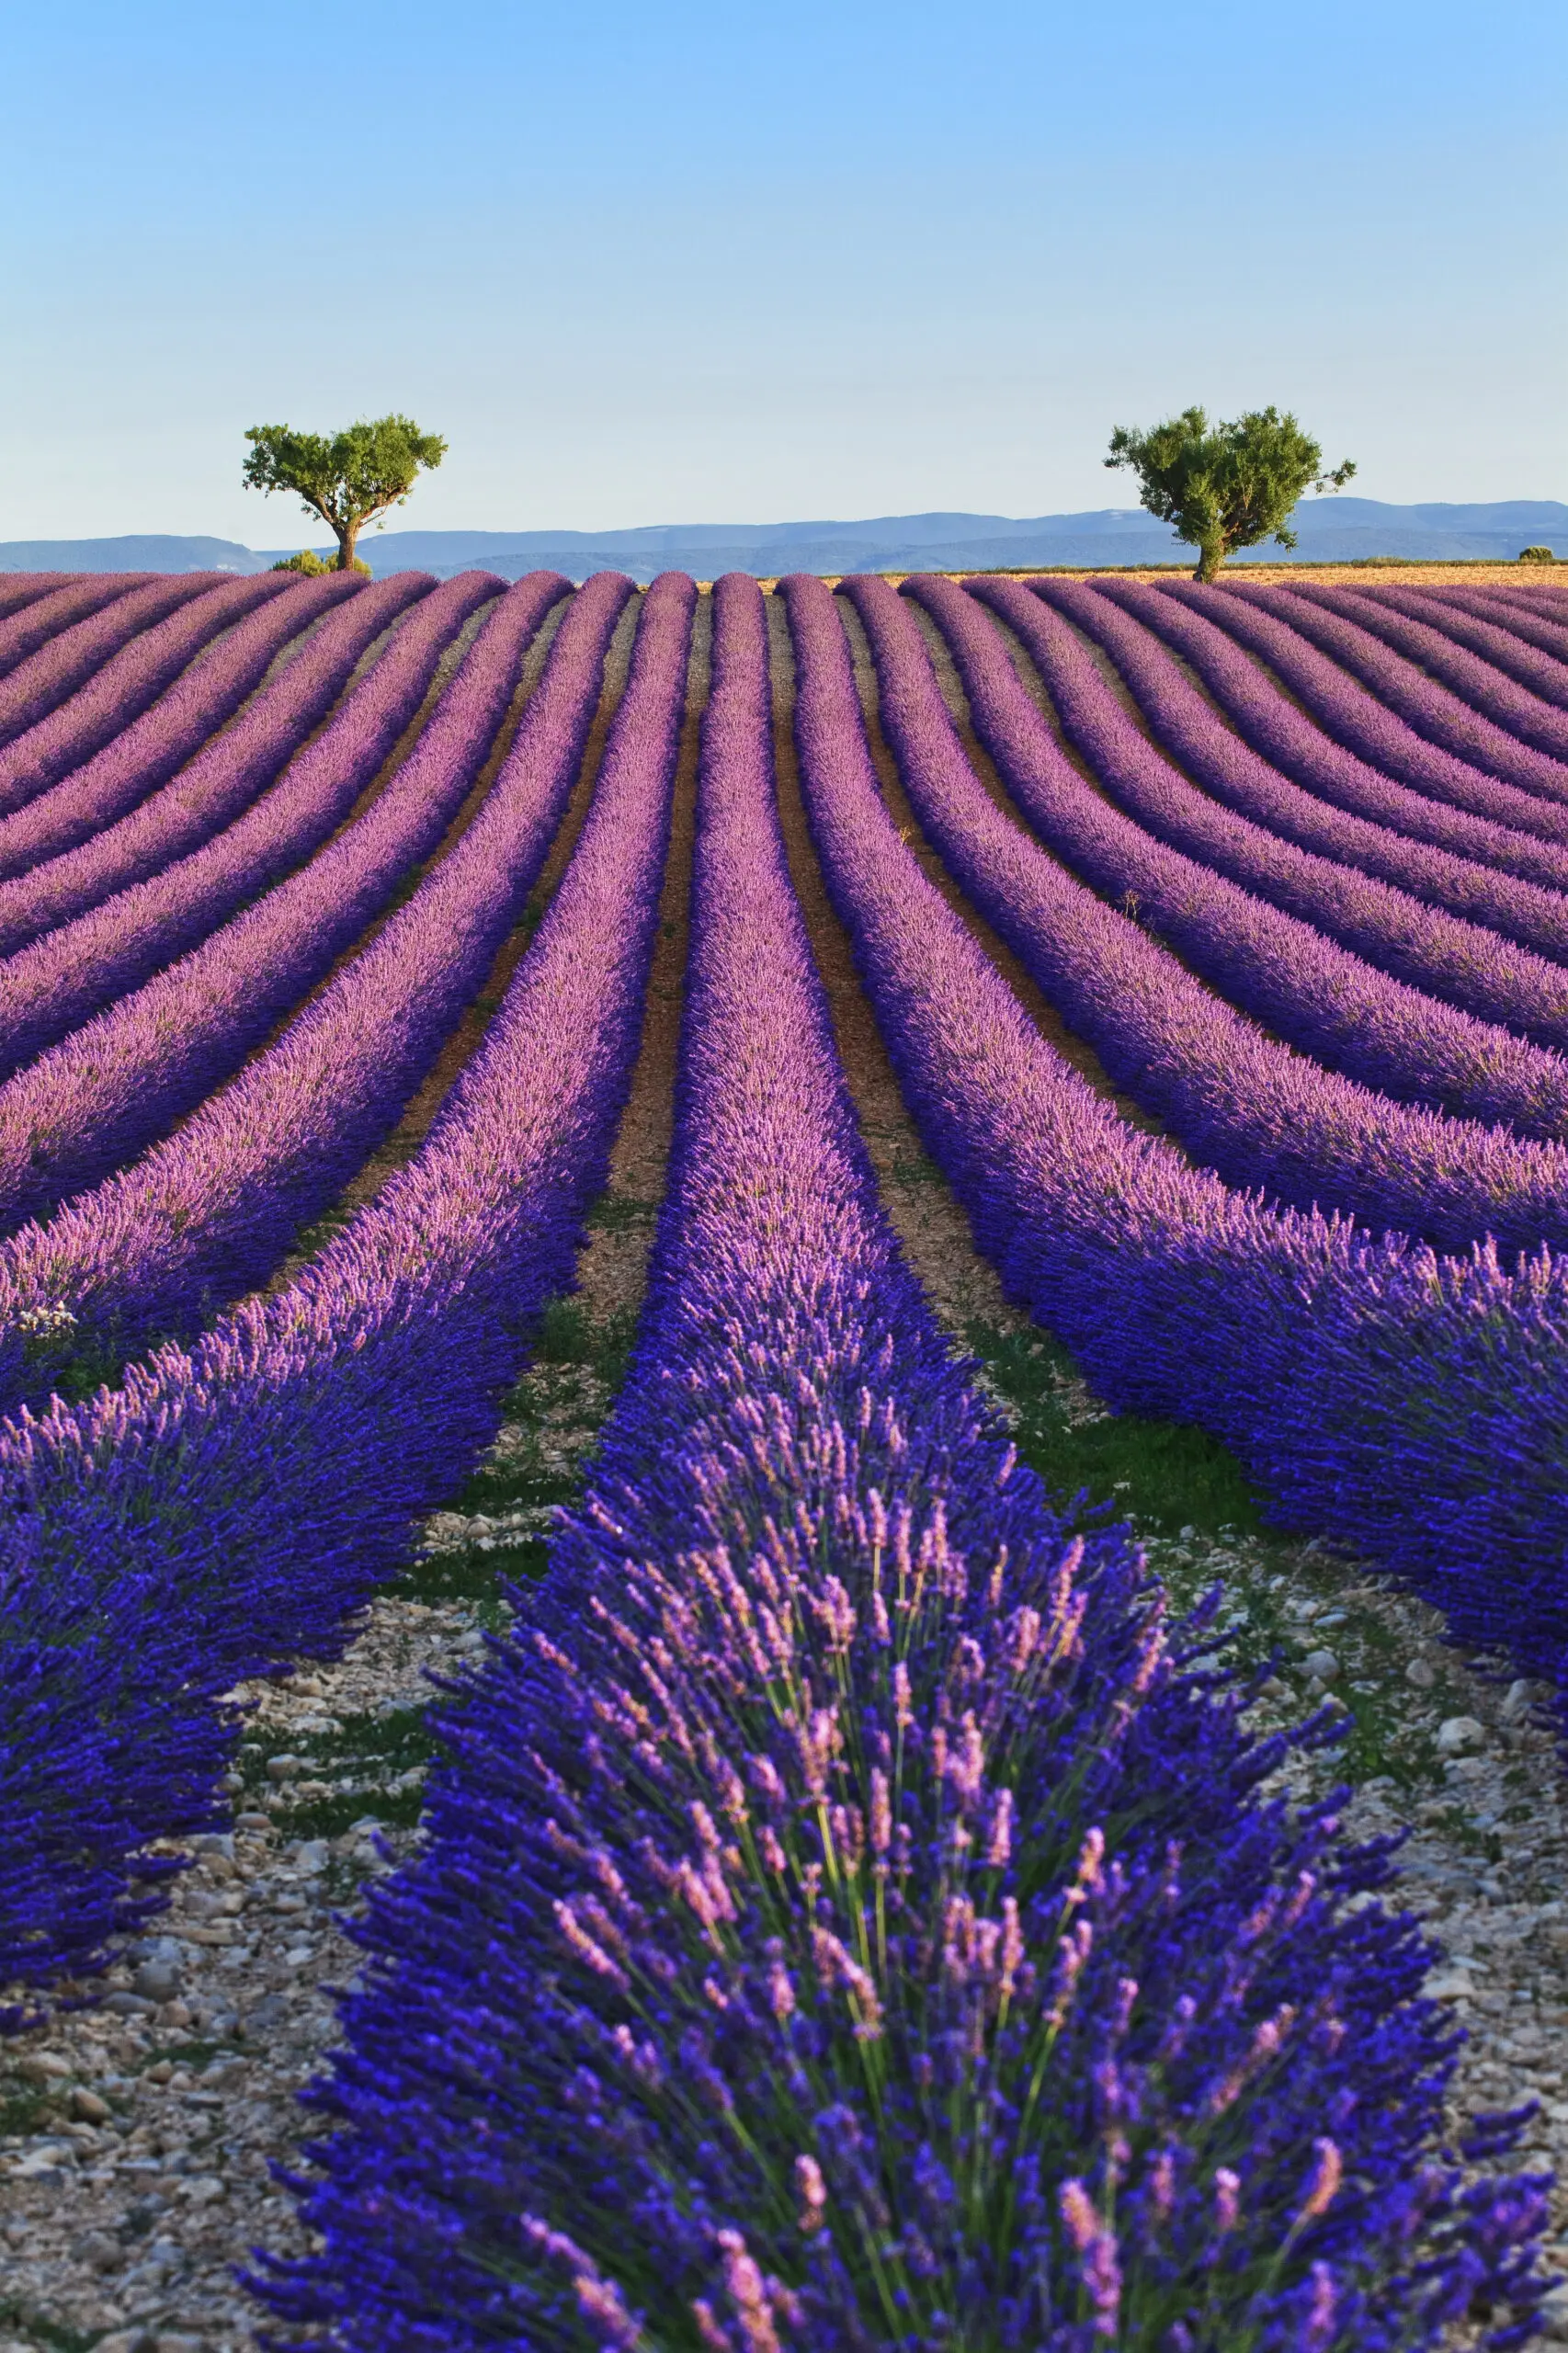 Wandbild (4600) Vaccarella Luigi – Lavender fields 2 präsentiert: Natur,Landschaften,Bäume,Blumen und Blüten,Sonstige Pflanzen,Sommer,Wege,Frühling,Luftaufnahmen